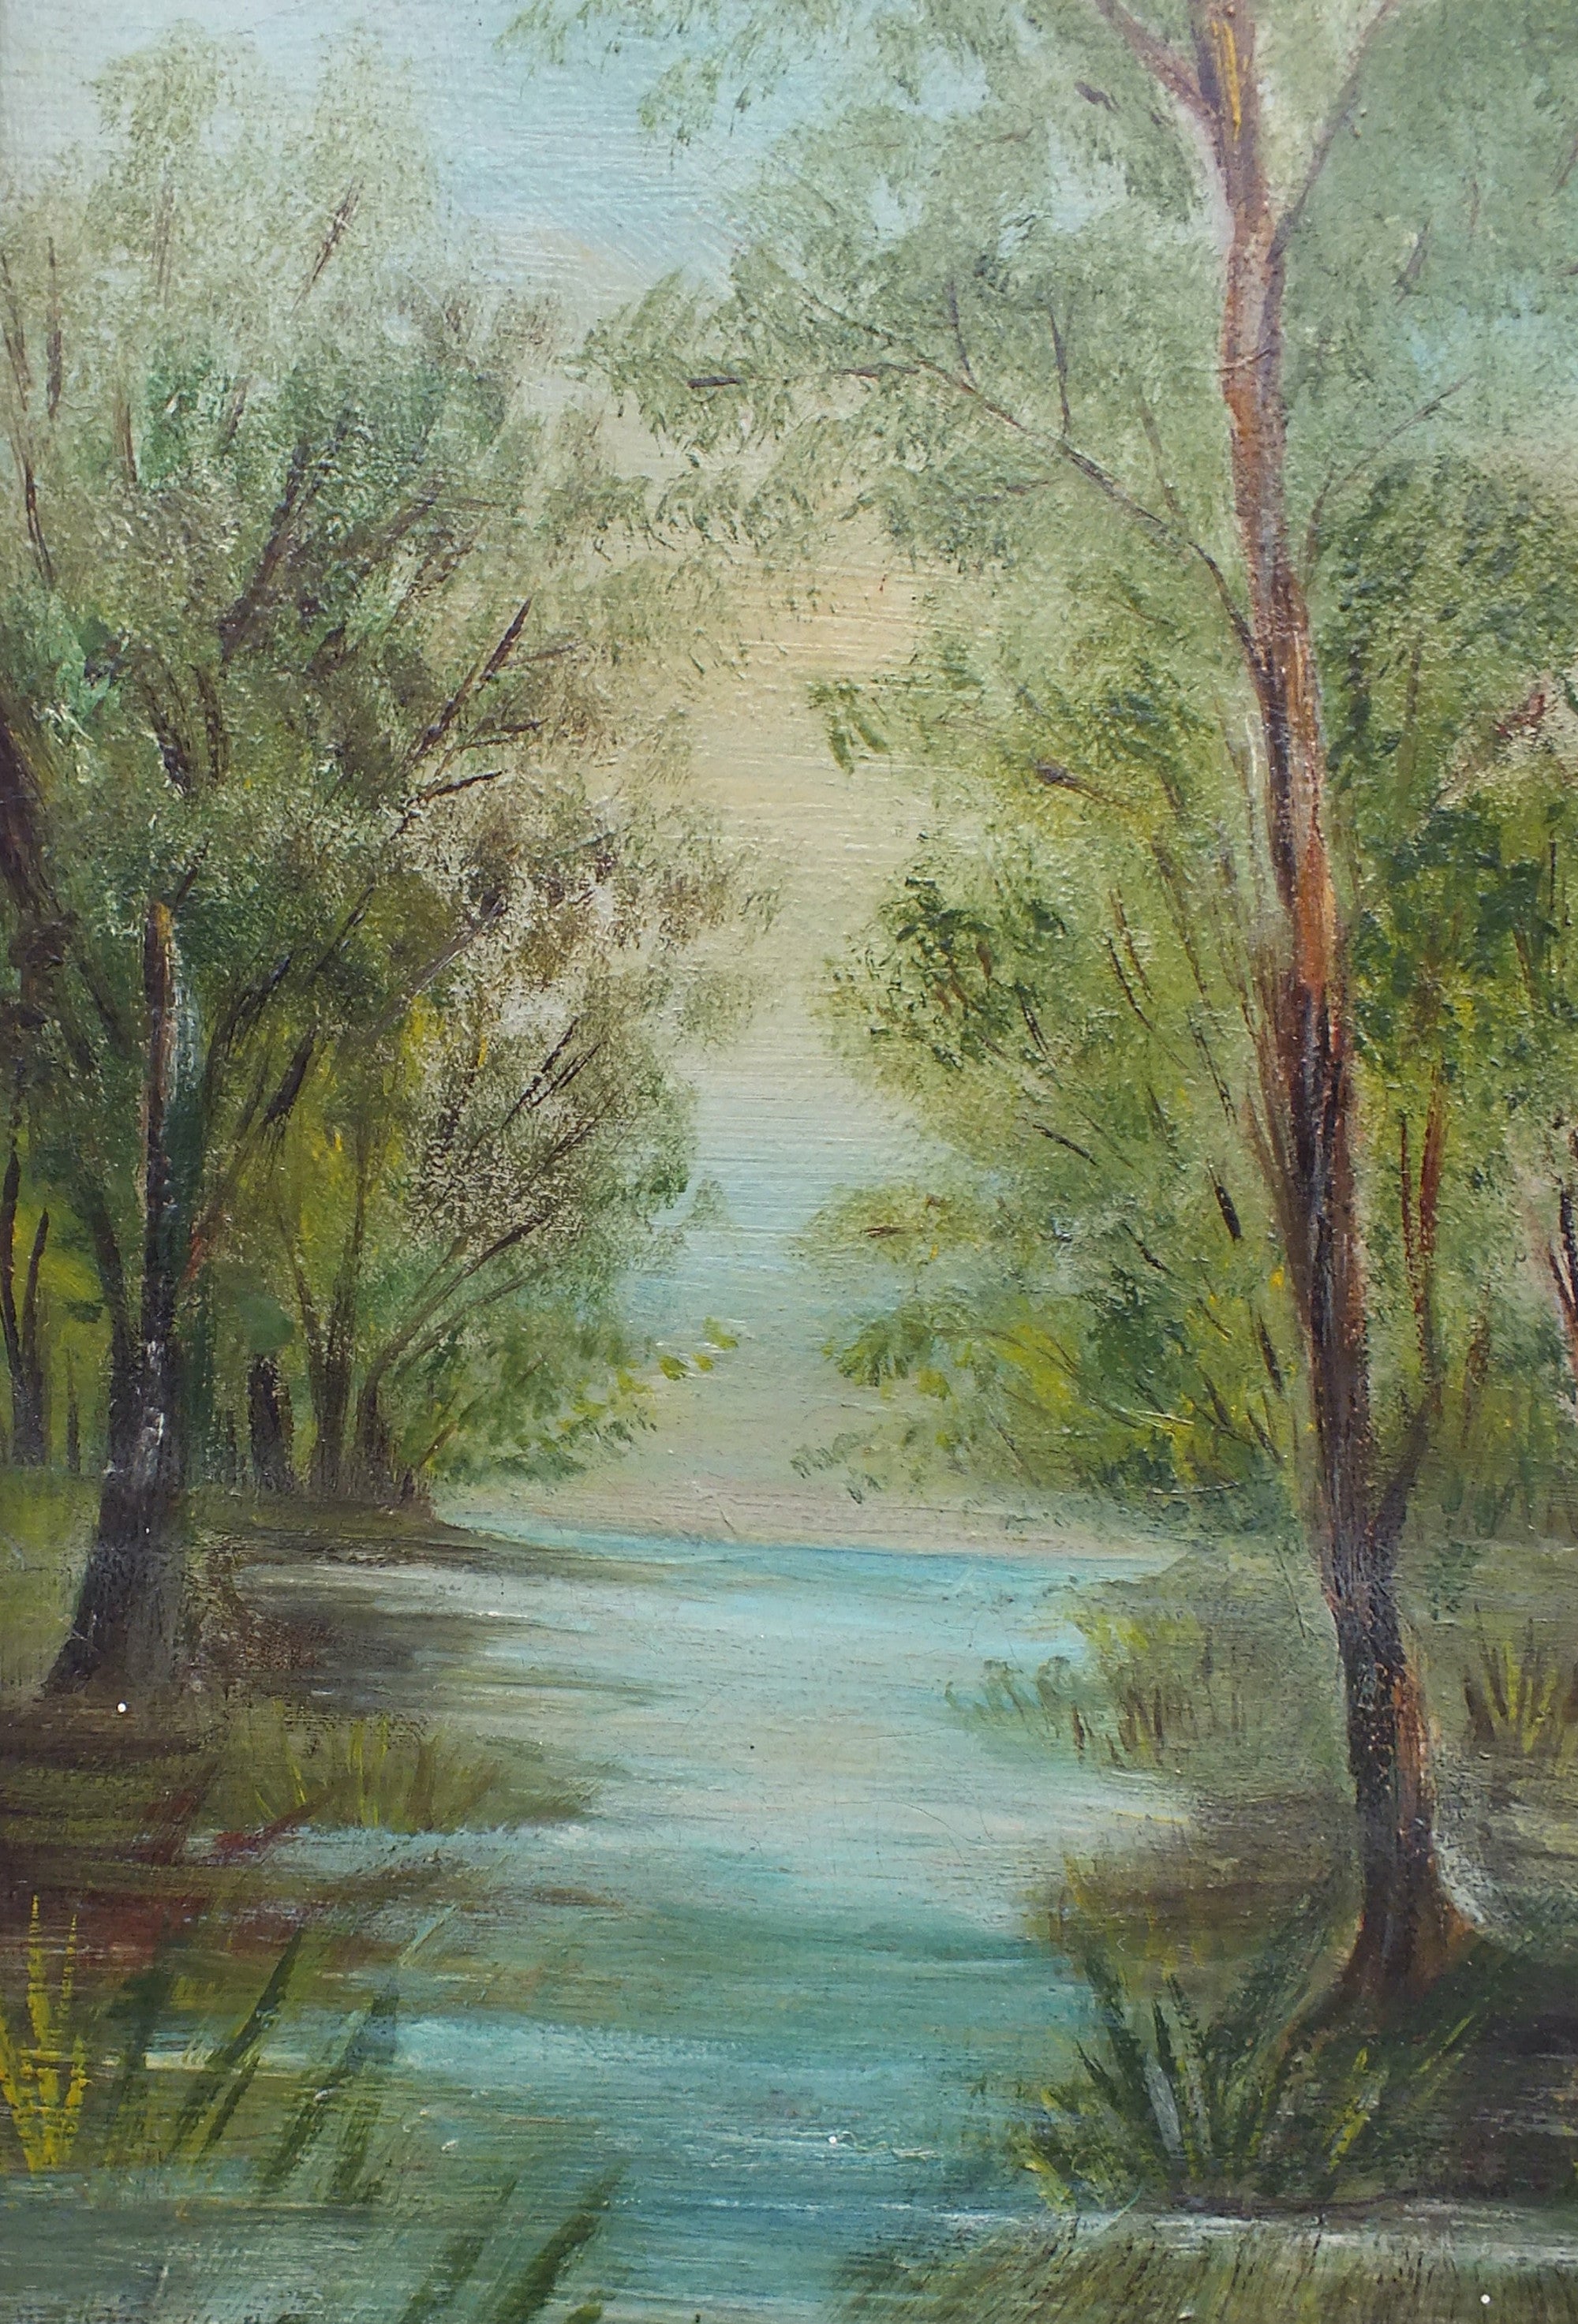 Victorian River Landscape Oil Painting Framed